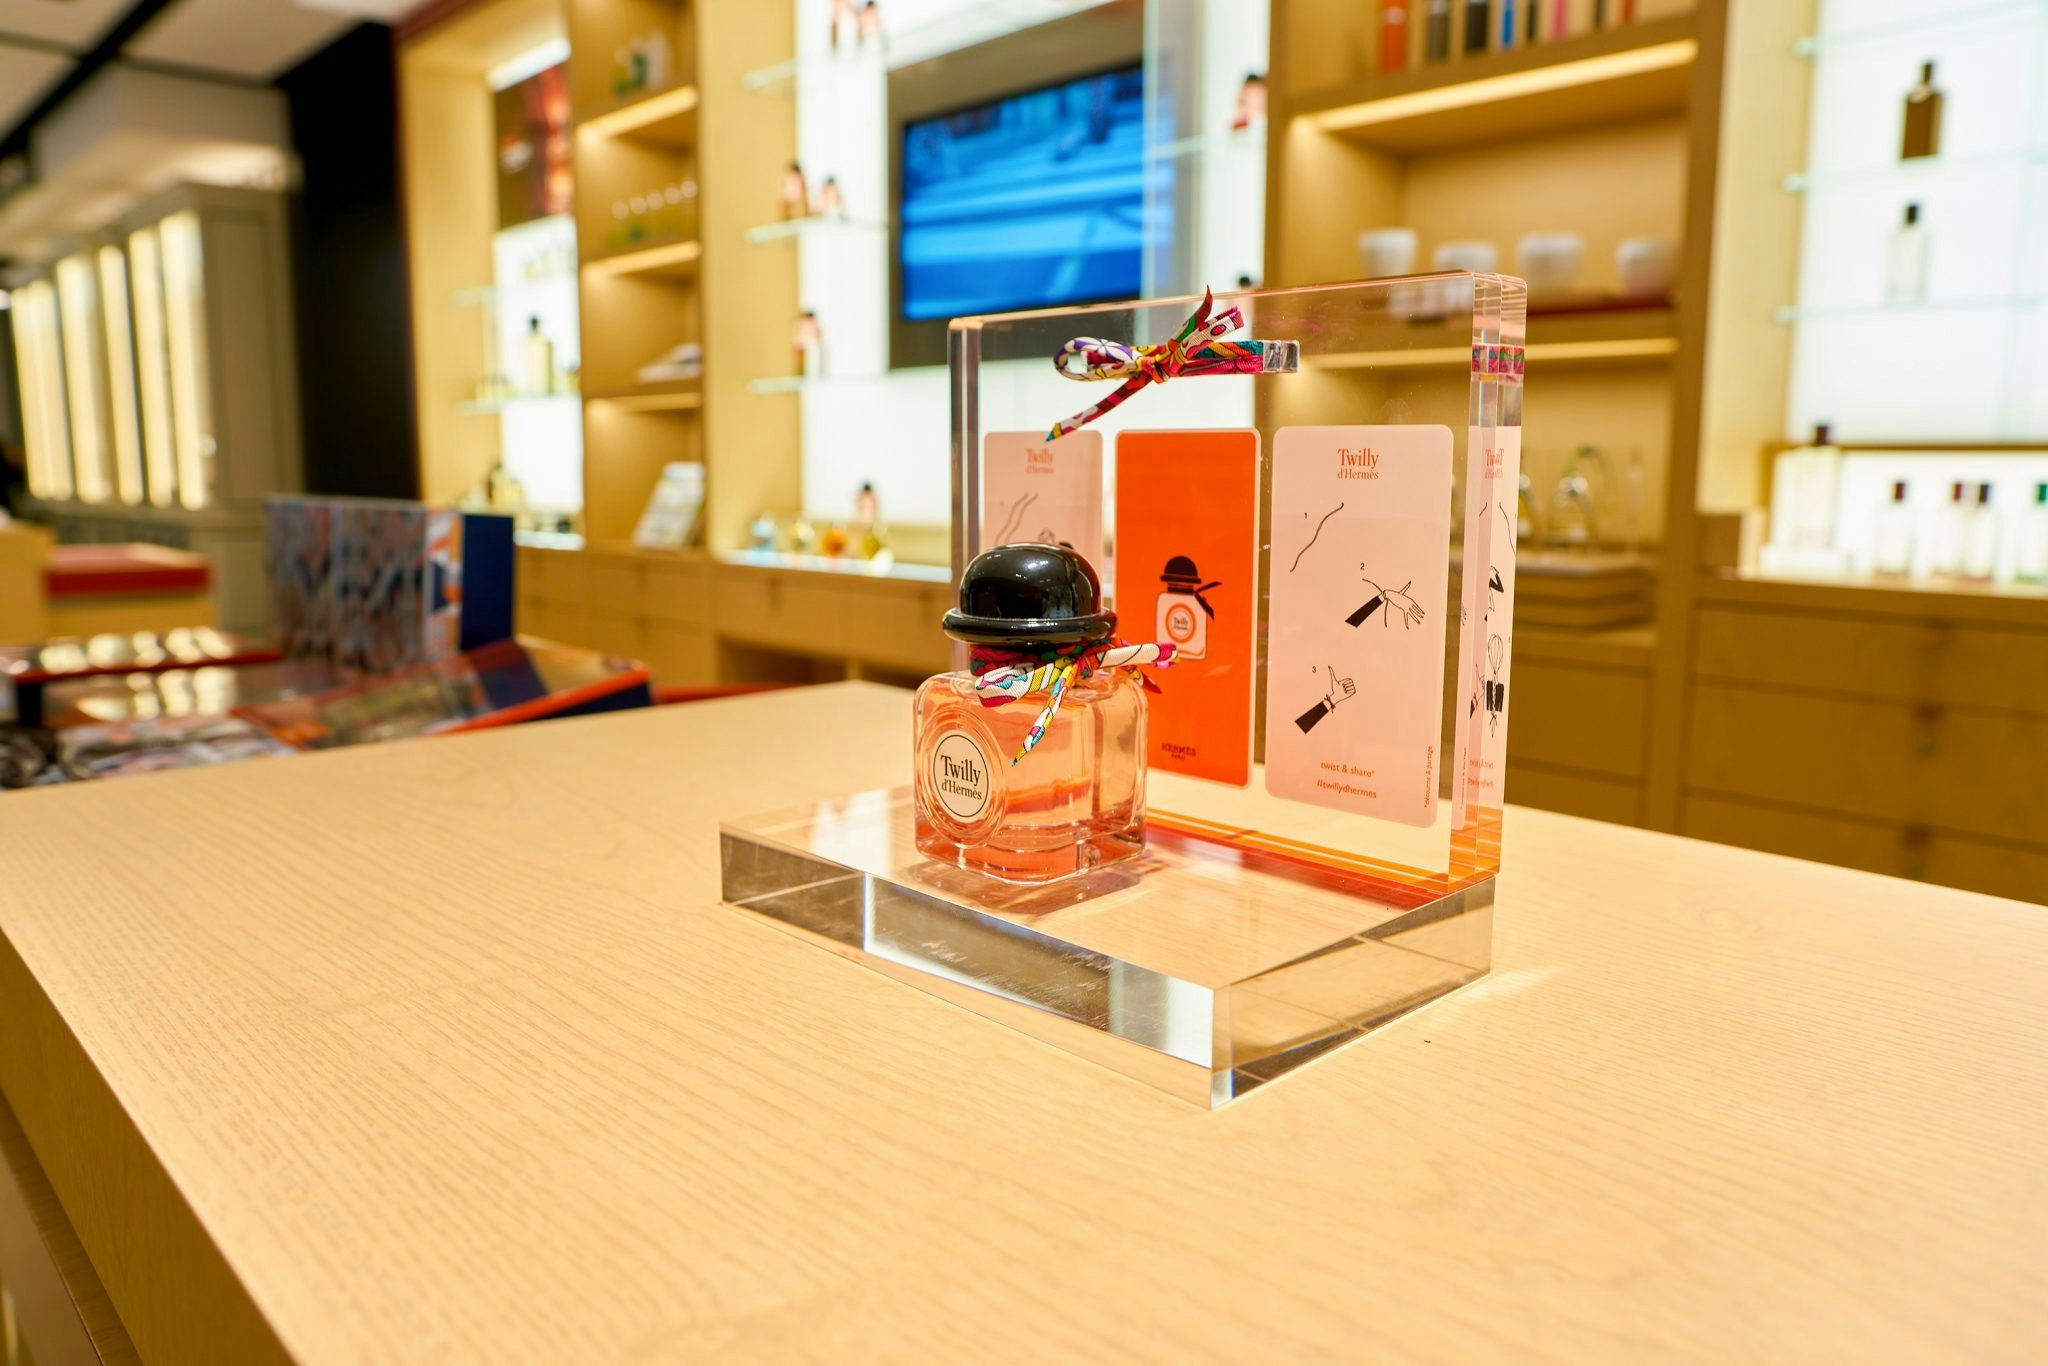 Hermes fragrance. Photo: Shutterstock